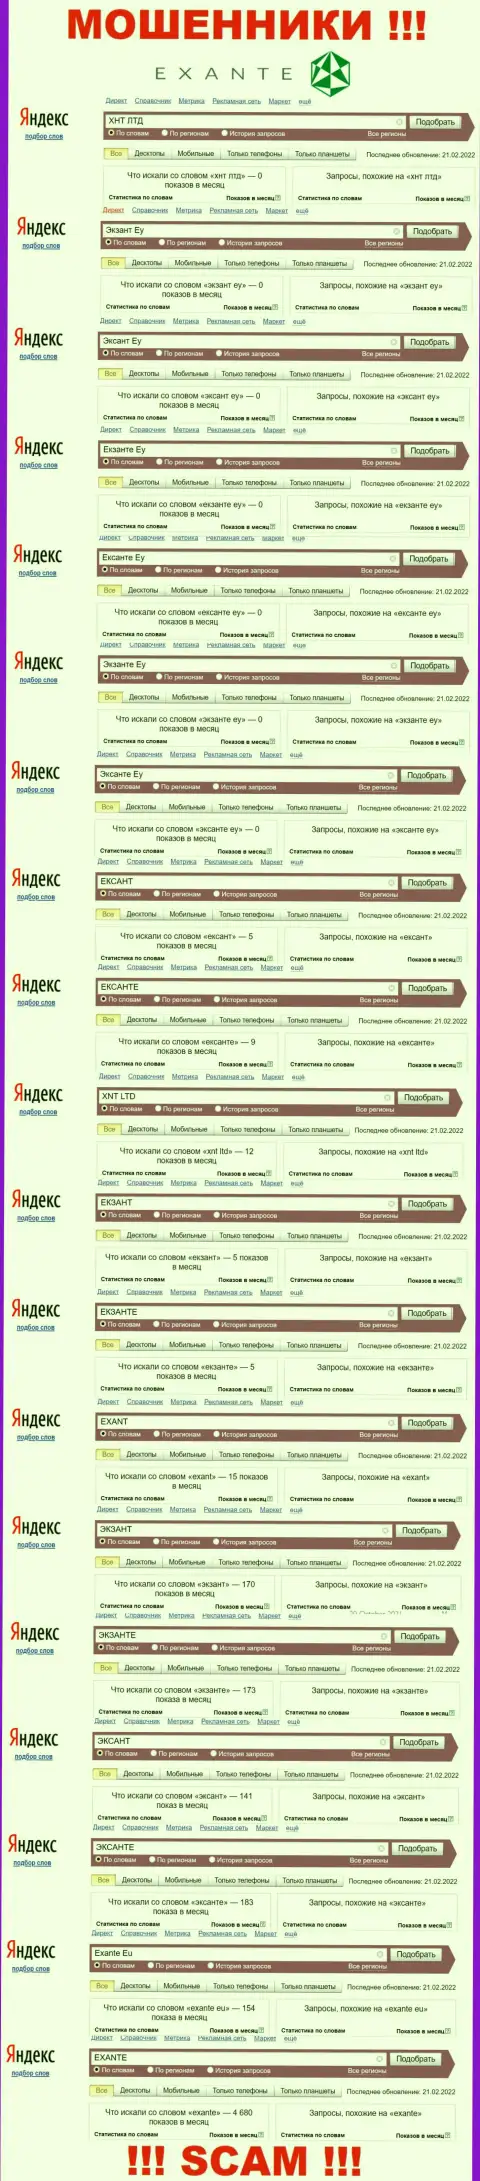 Суммарное число online запросов в поисковиках всемирной internet сети по бренду мошенников EXANTE